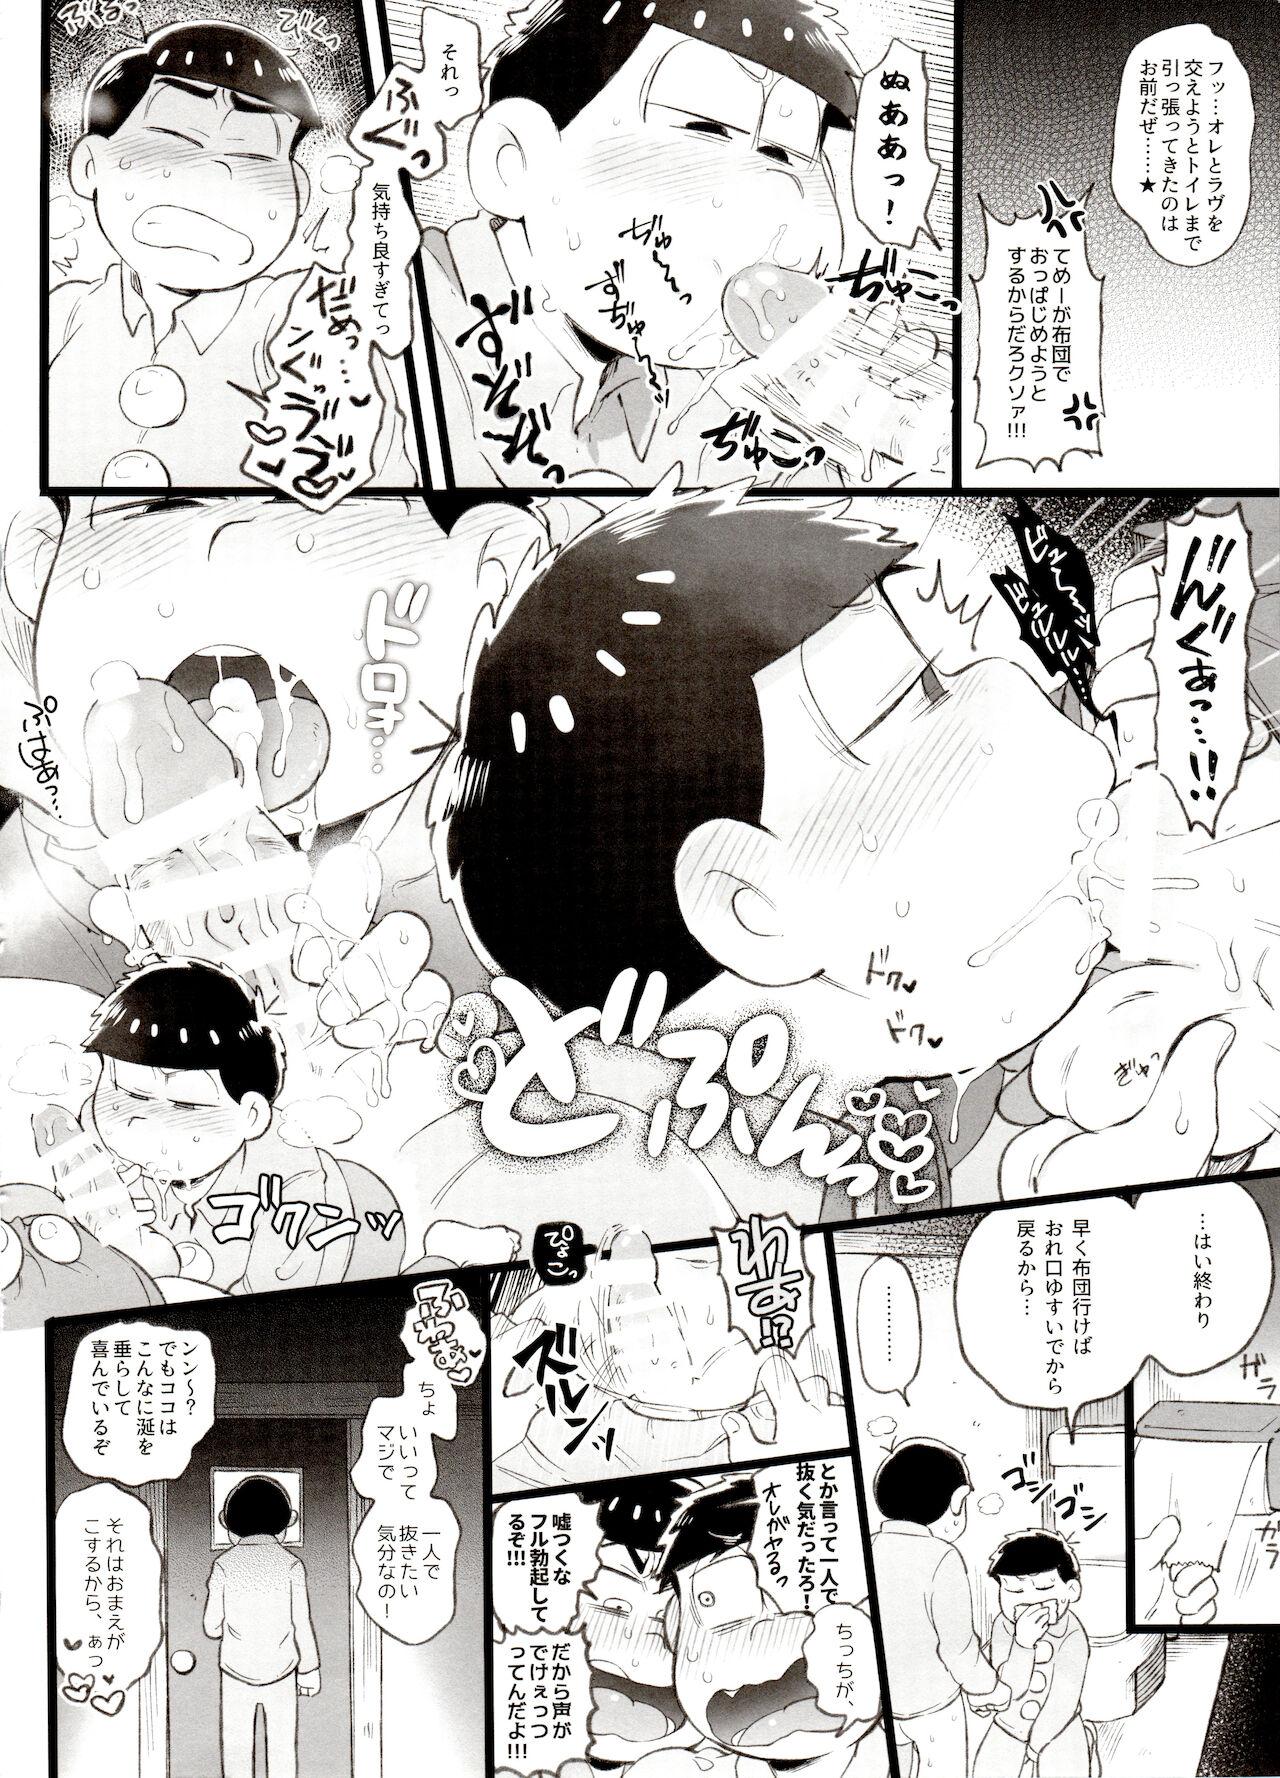 Friend Kahou 10-ji Yon no Omake Hon + Andante no Koufukuron Gojitsu Manga - Osomatsu san Gay Boysporn - Page 3